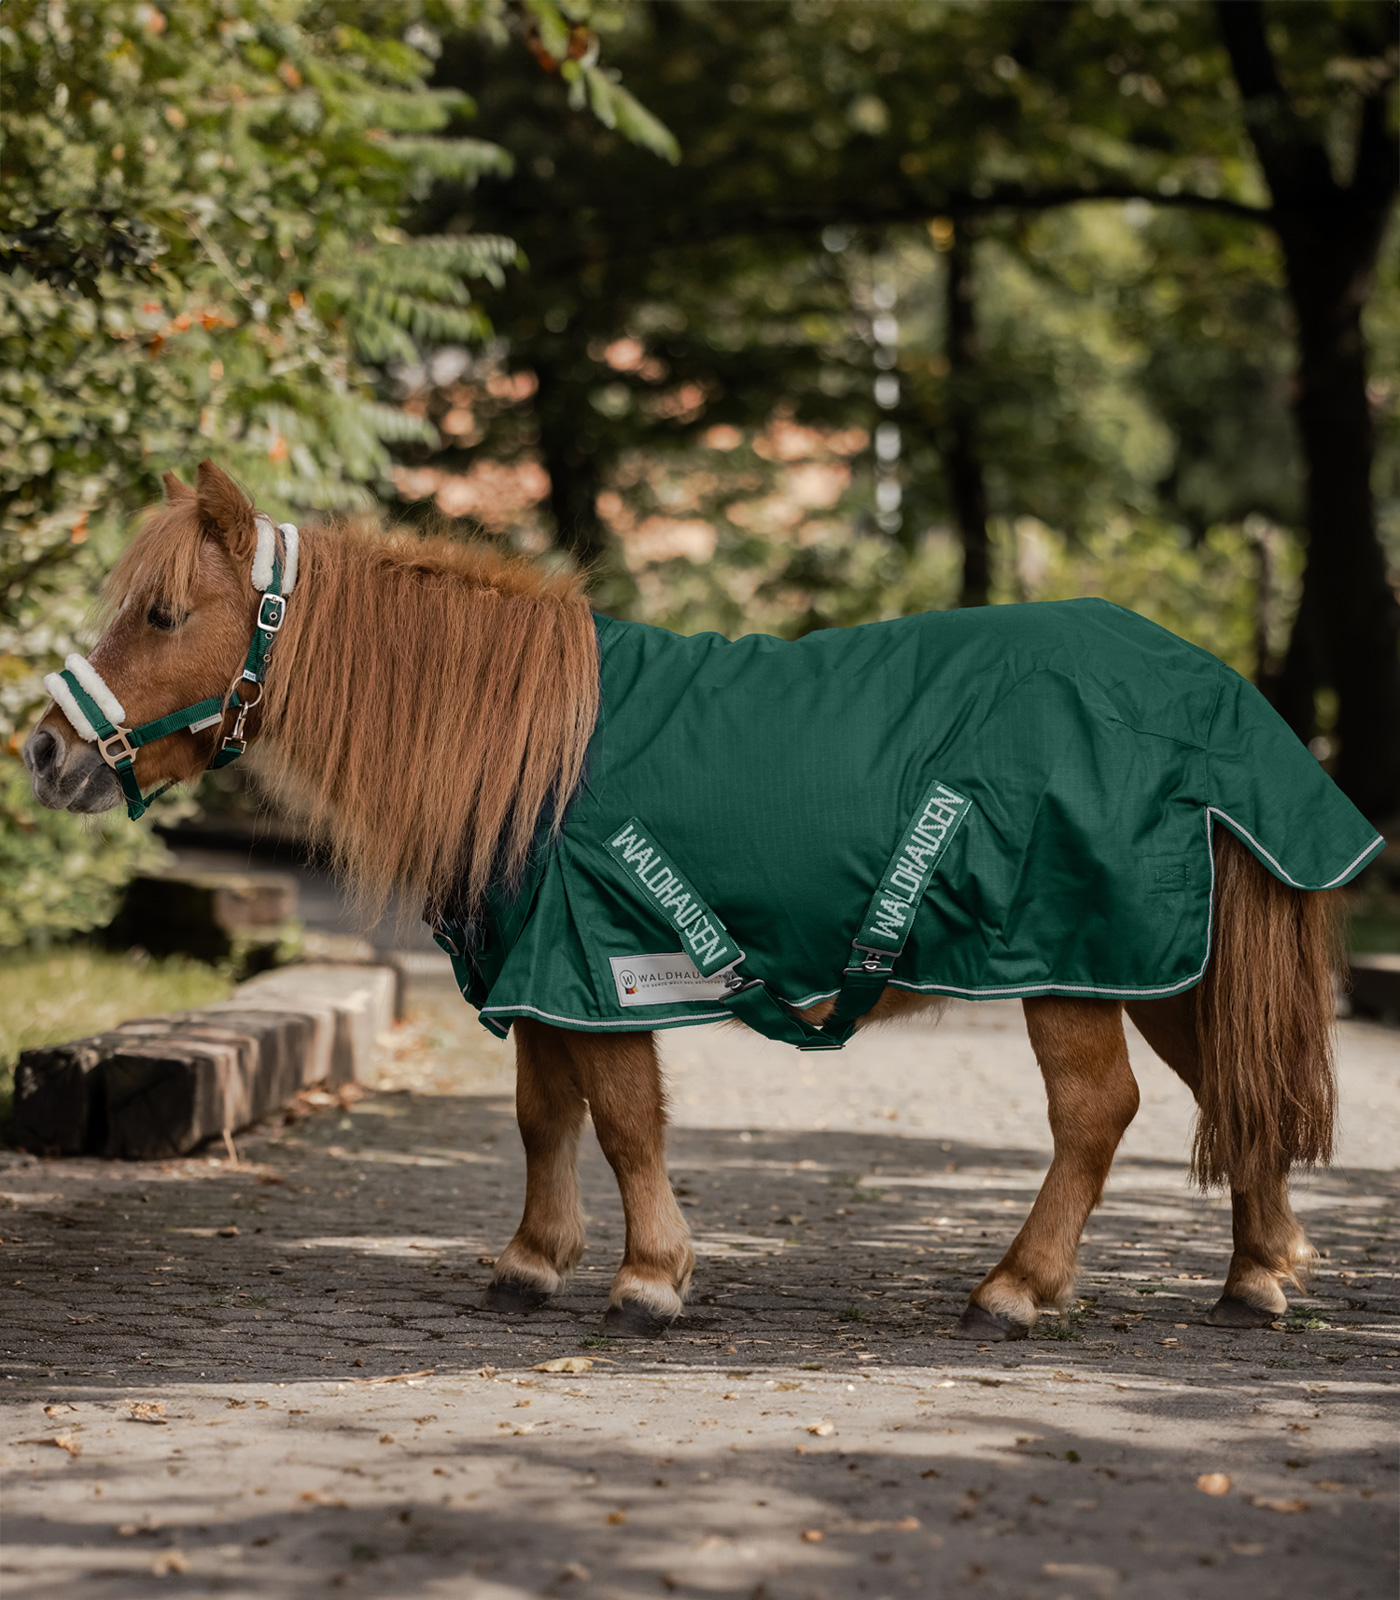 Couverture de pluie cheval : chemise de pluie pour cheval